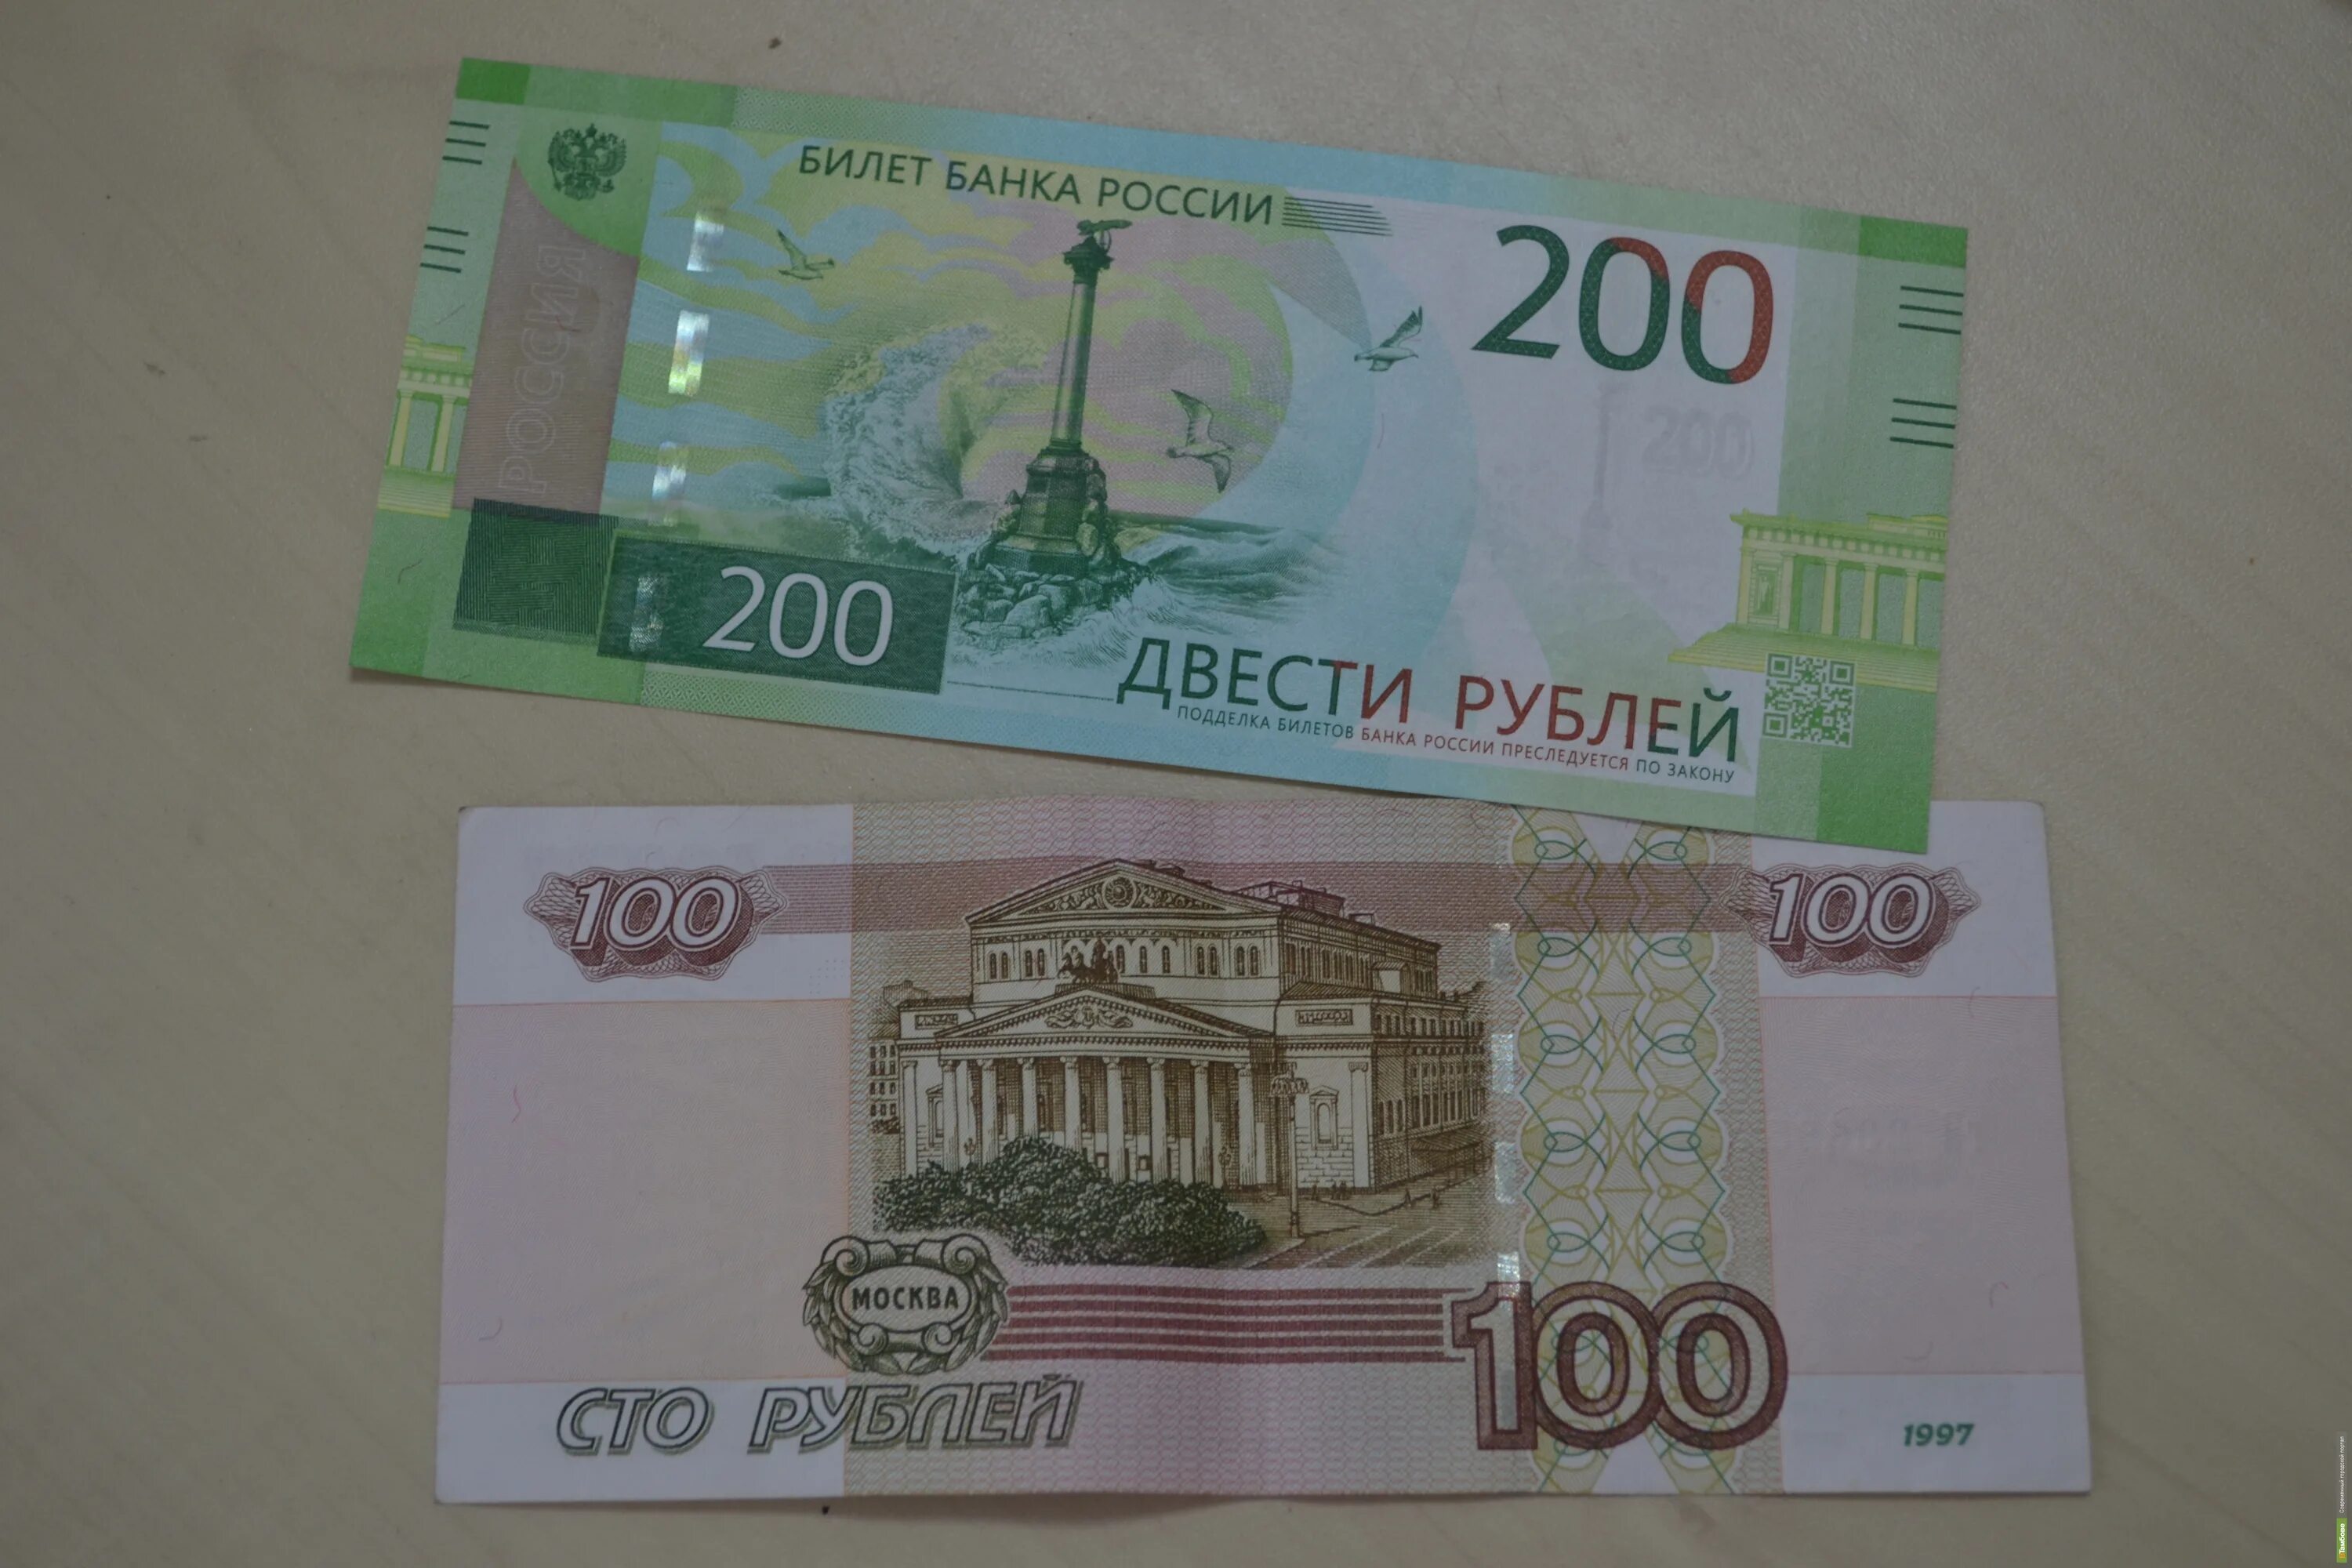 200 Рублей. 200 Рублей банкнота. 200 Рублей 1997. Новые купюры. 35 200 в рублях